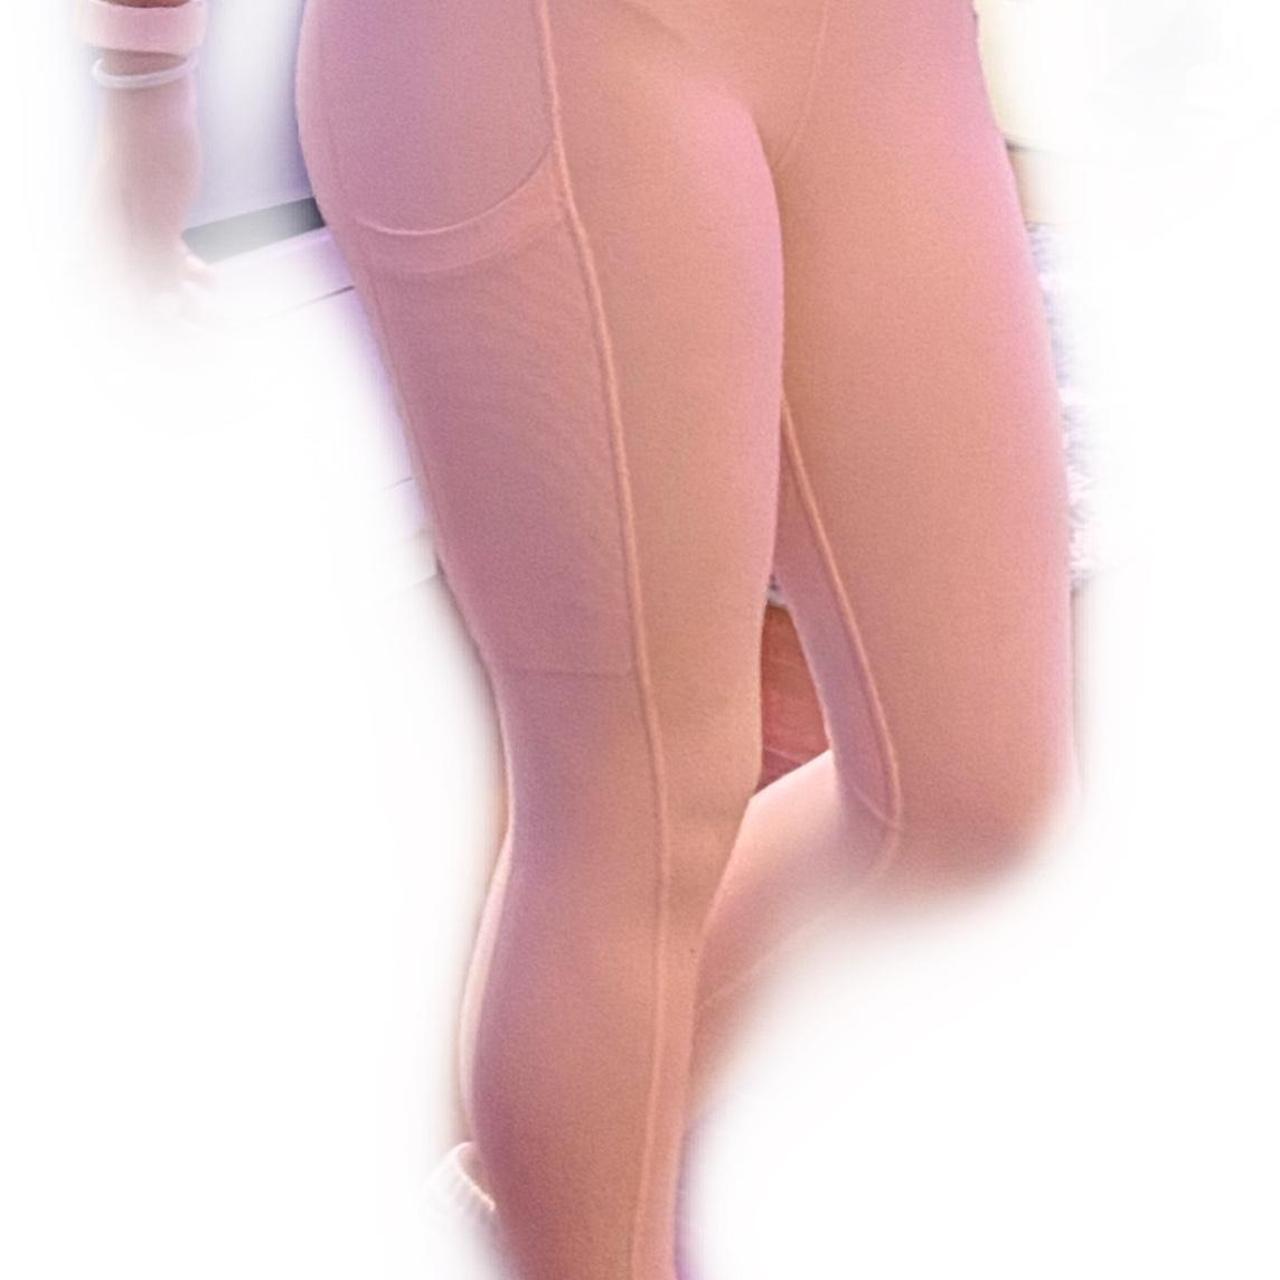 xxs/xs purple/pink fabletics leggings - lightly - Depop